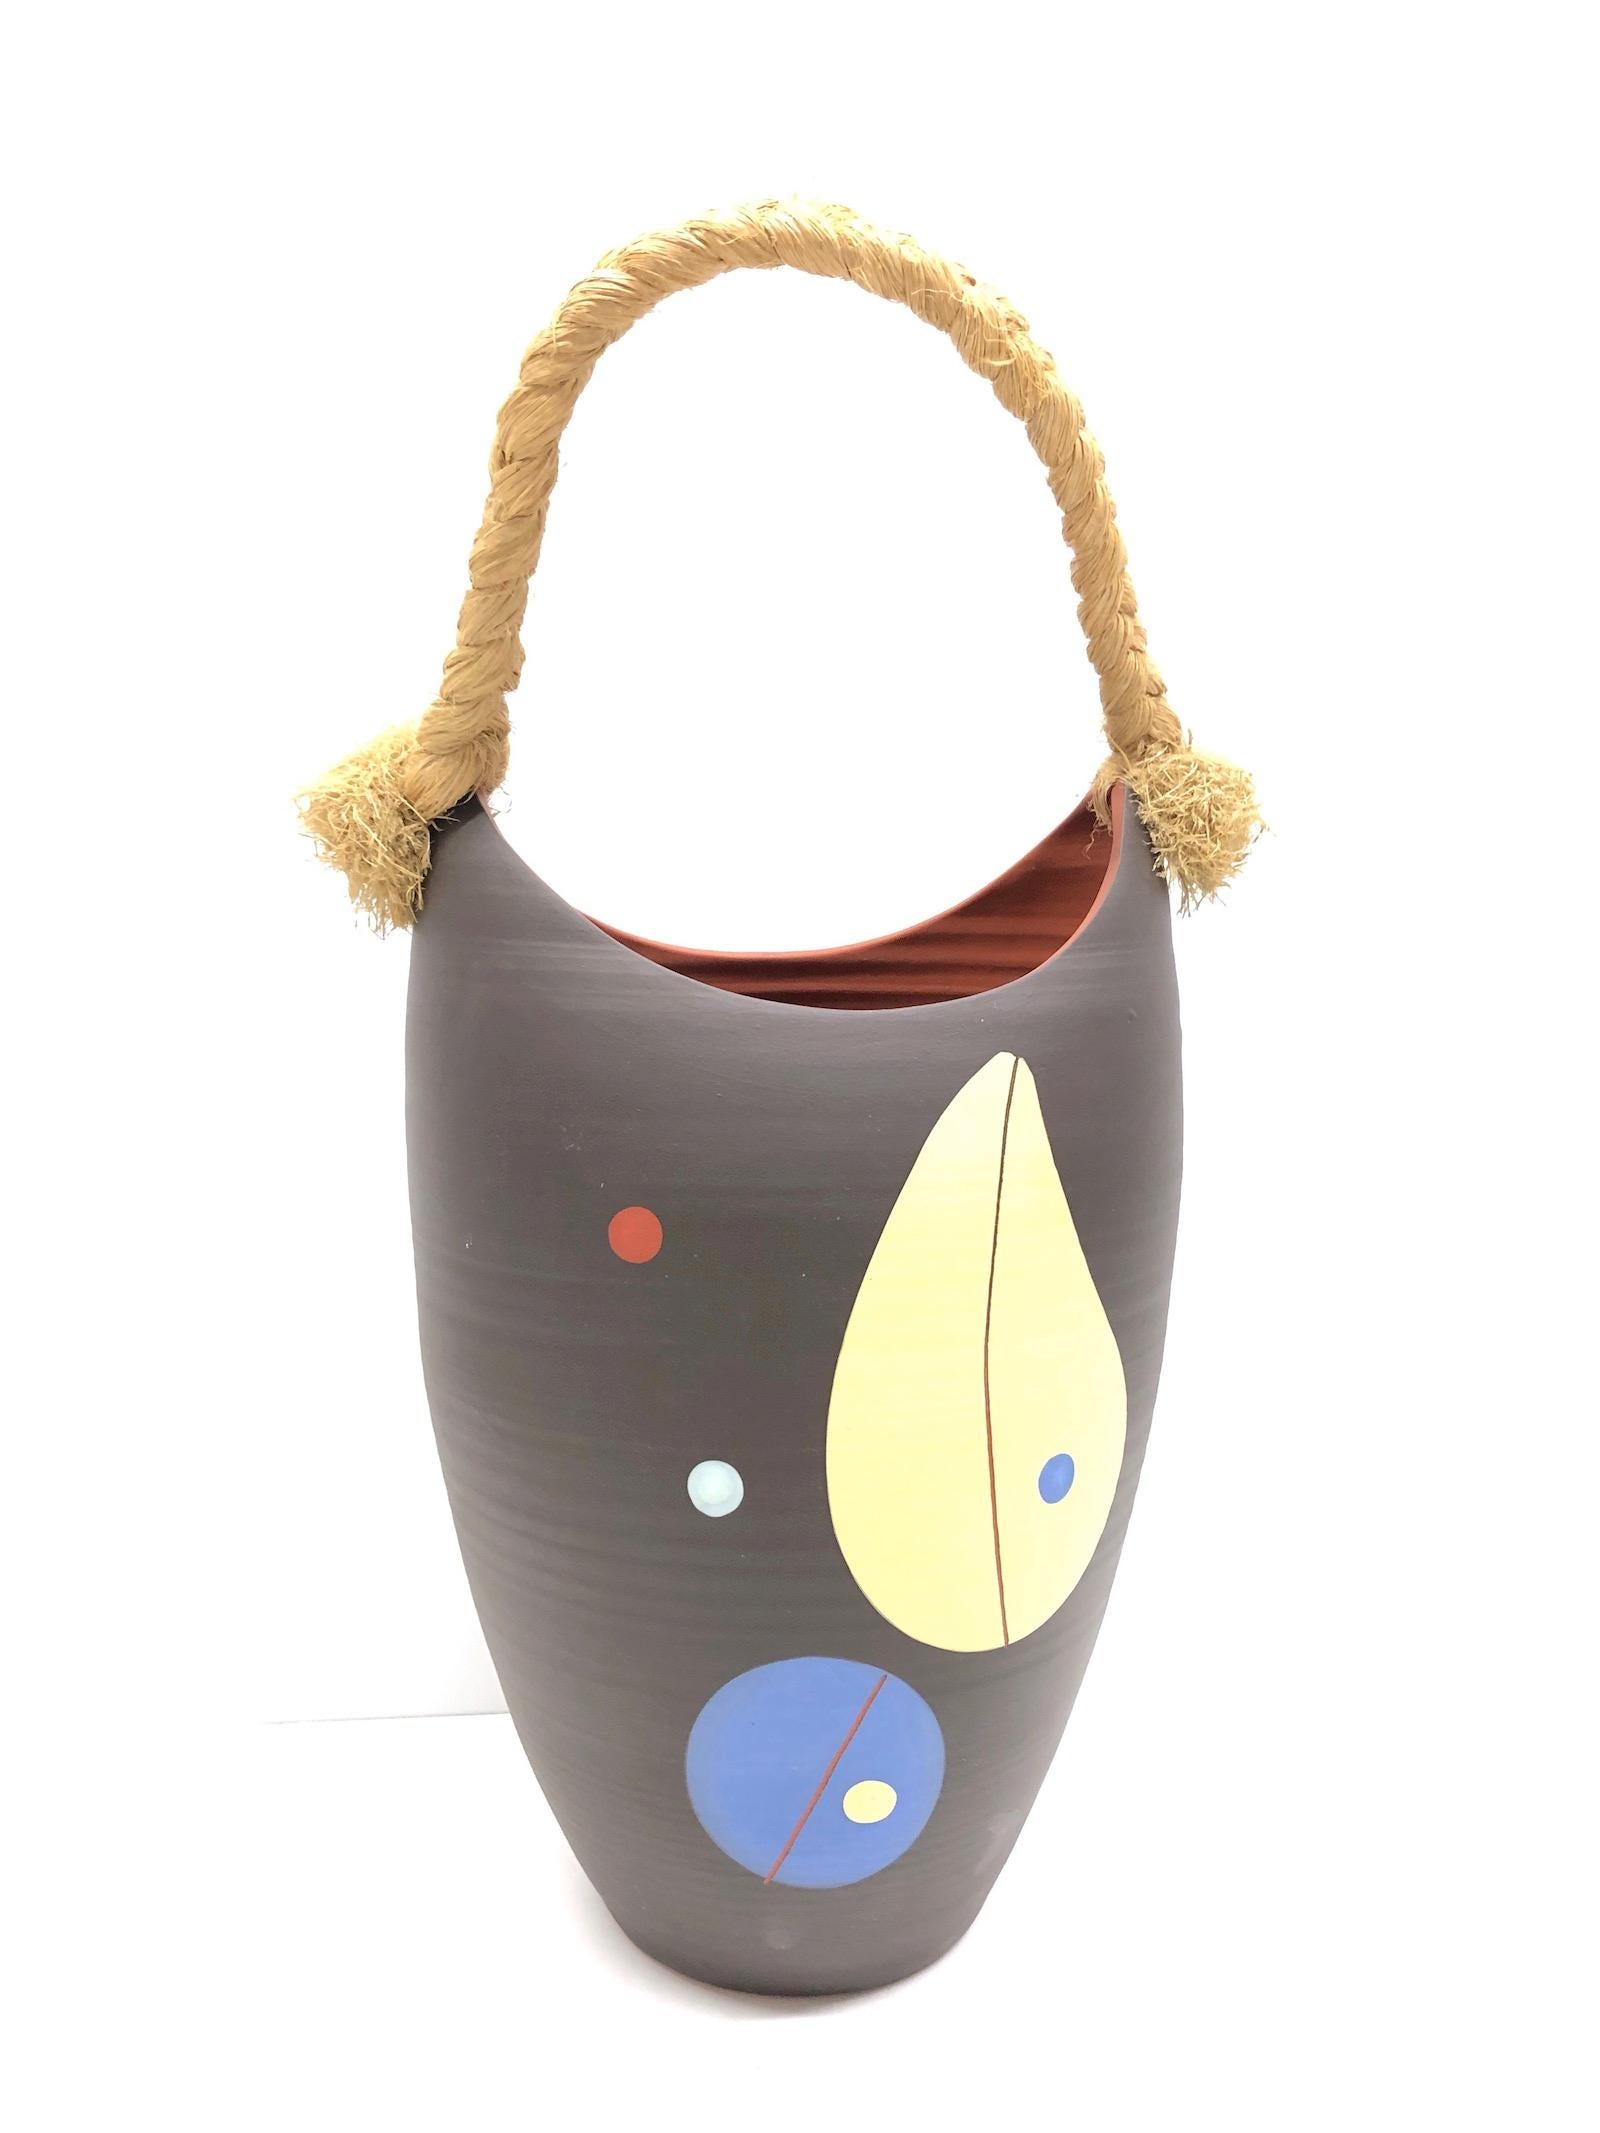 Hübsche Vase oder Gefäß aus den 1950er Jahren aus natürlichem Terrakotta-Ton. Kennzeichnung 74/35 Formularnummer. Er spiegelt den typischen asiatischen Stil der 1950er Jahre wider und ist eine schöne Ergänzung für jedes Büro oder jeden Wartebereich.